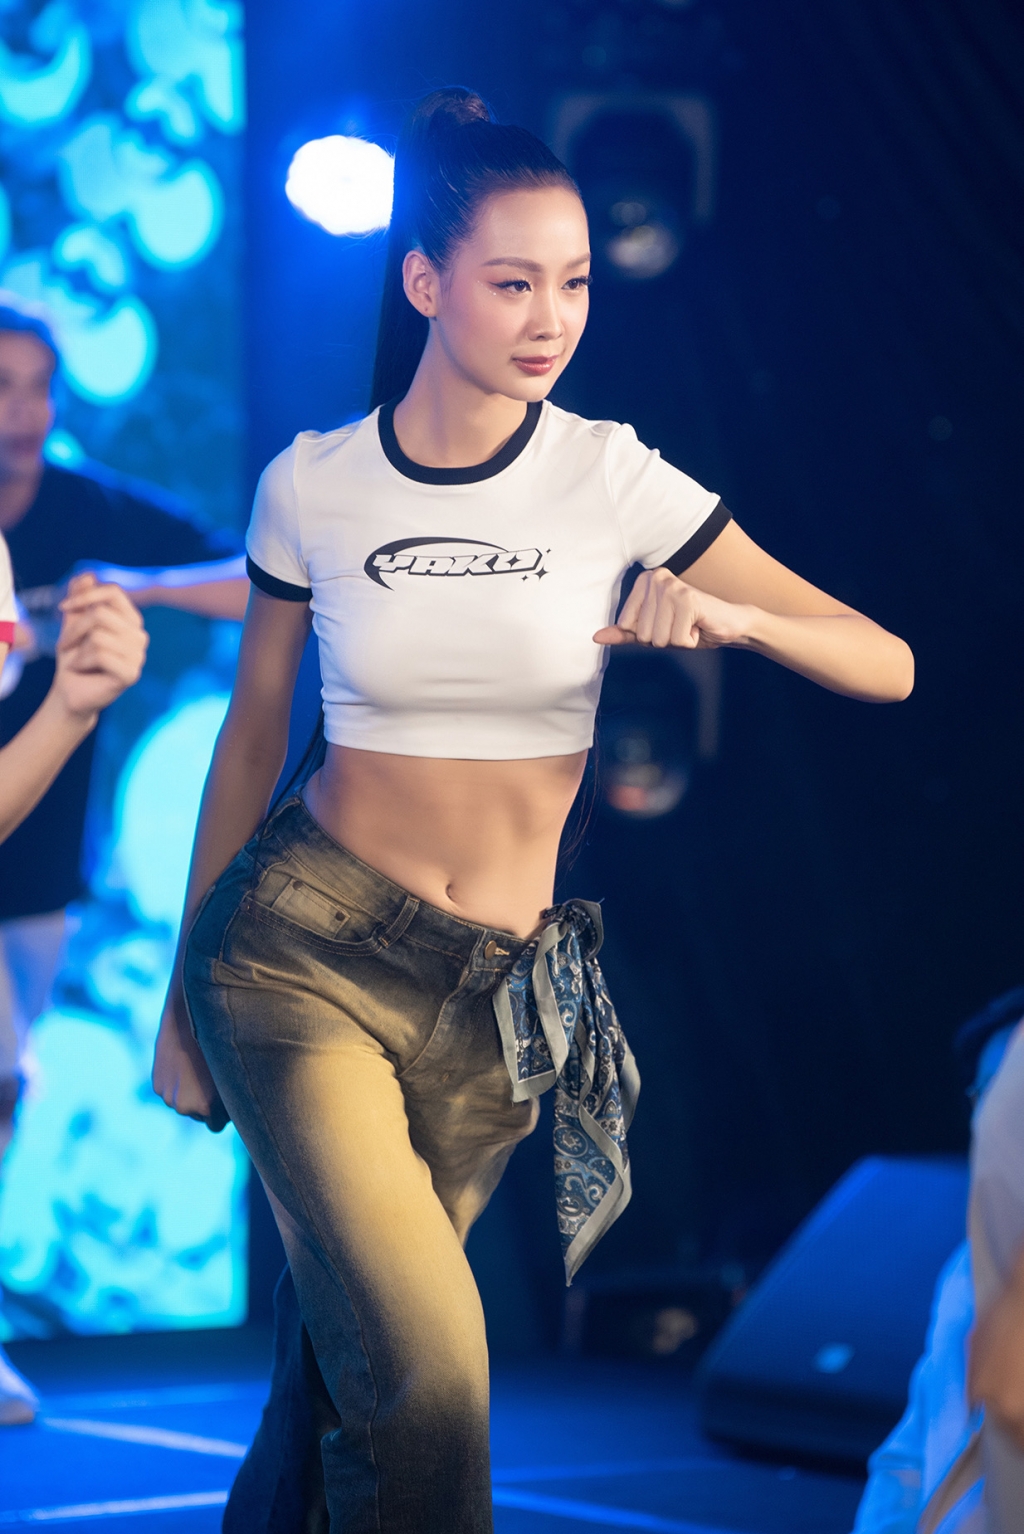 Hoa hậu Mai Phương, Bảo Ngọc, Á hậu Phương Nhi mặc croptop nhảy hiện đại